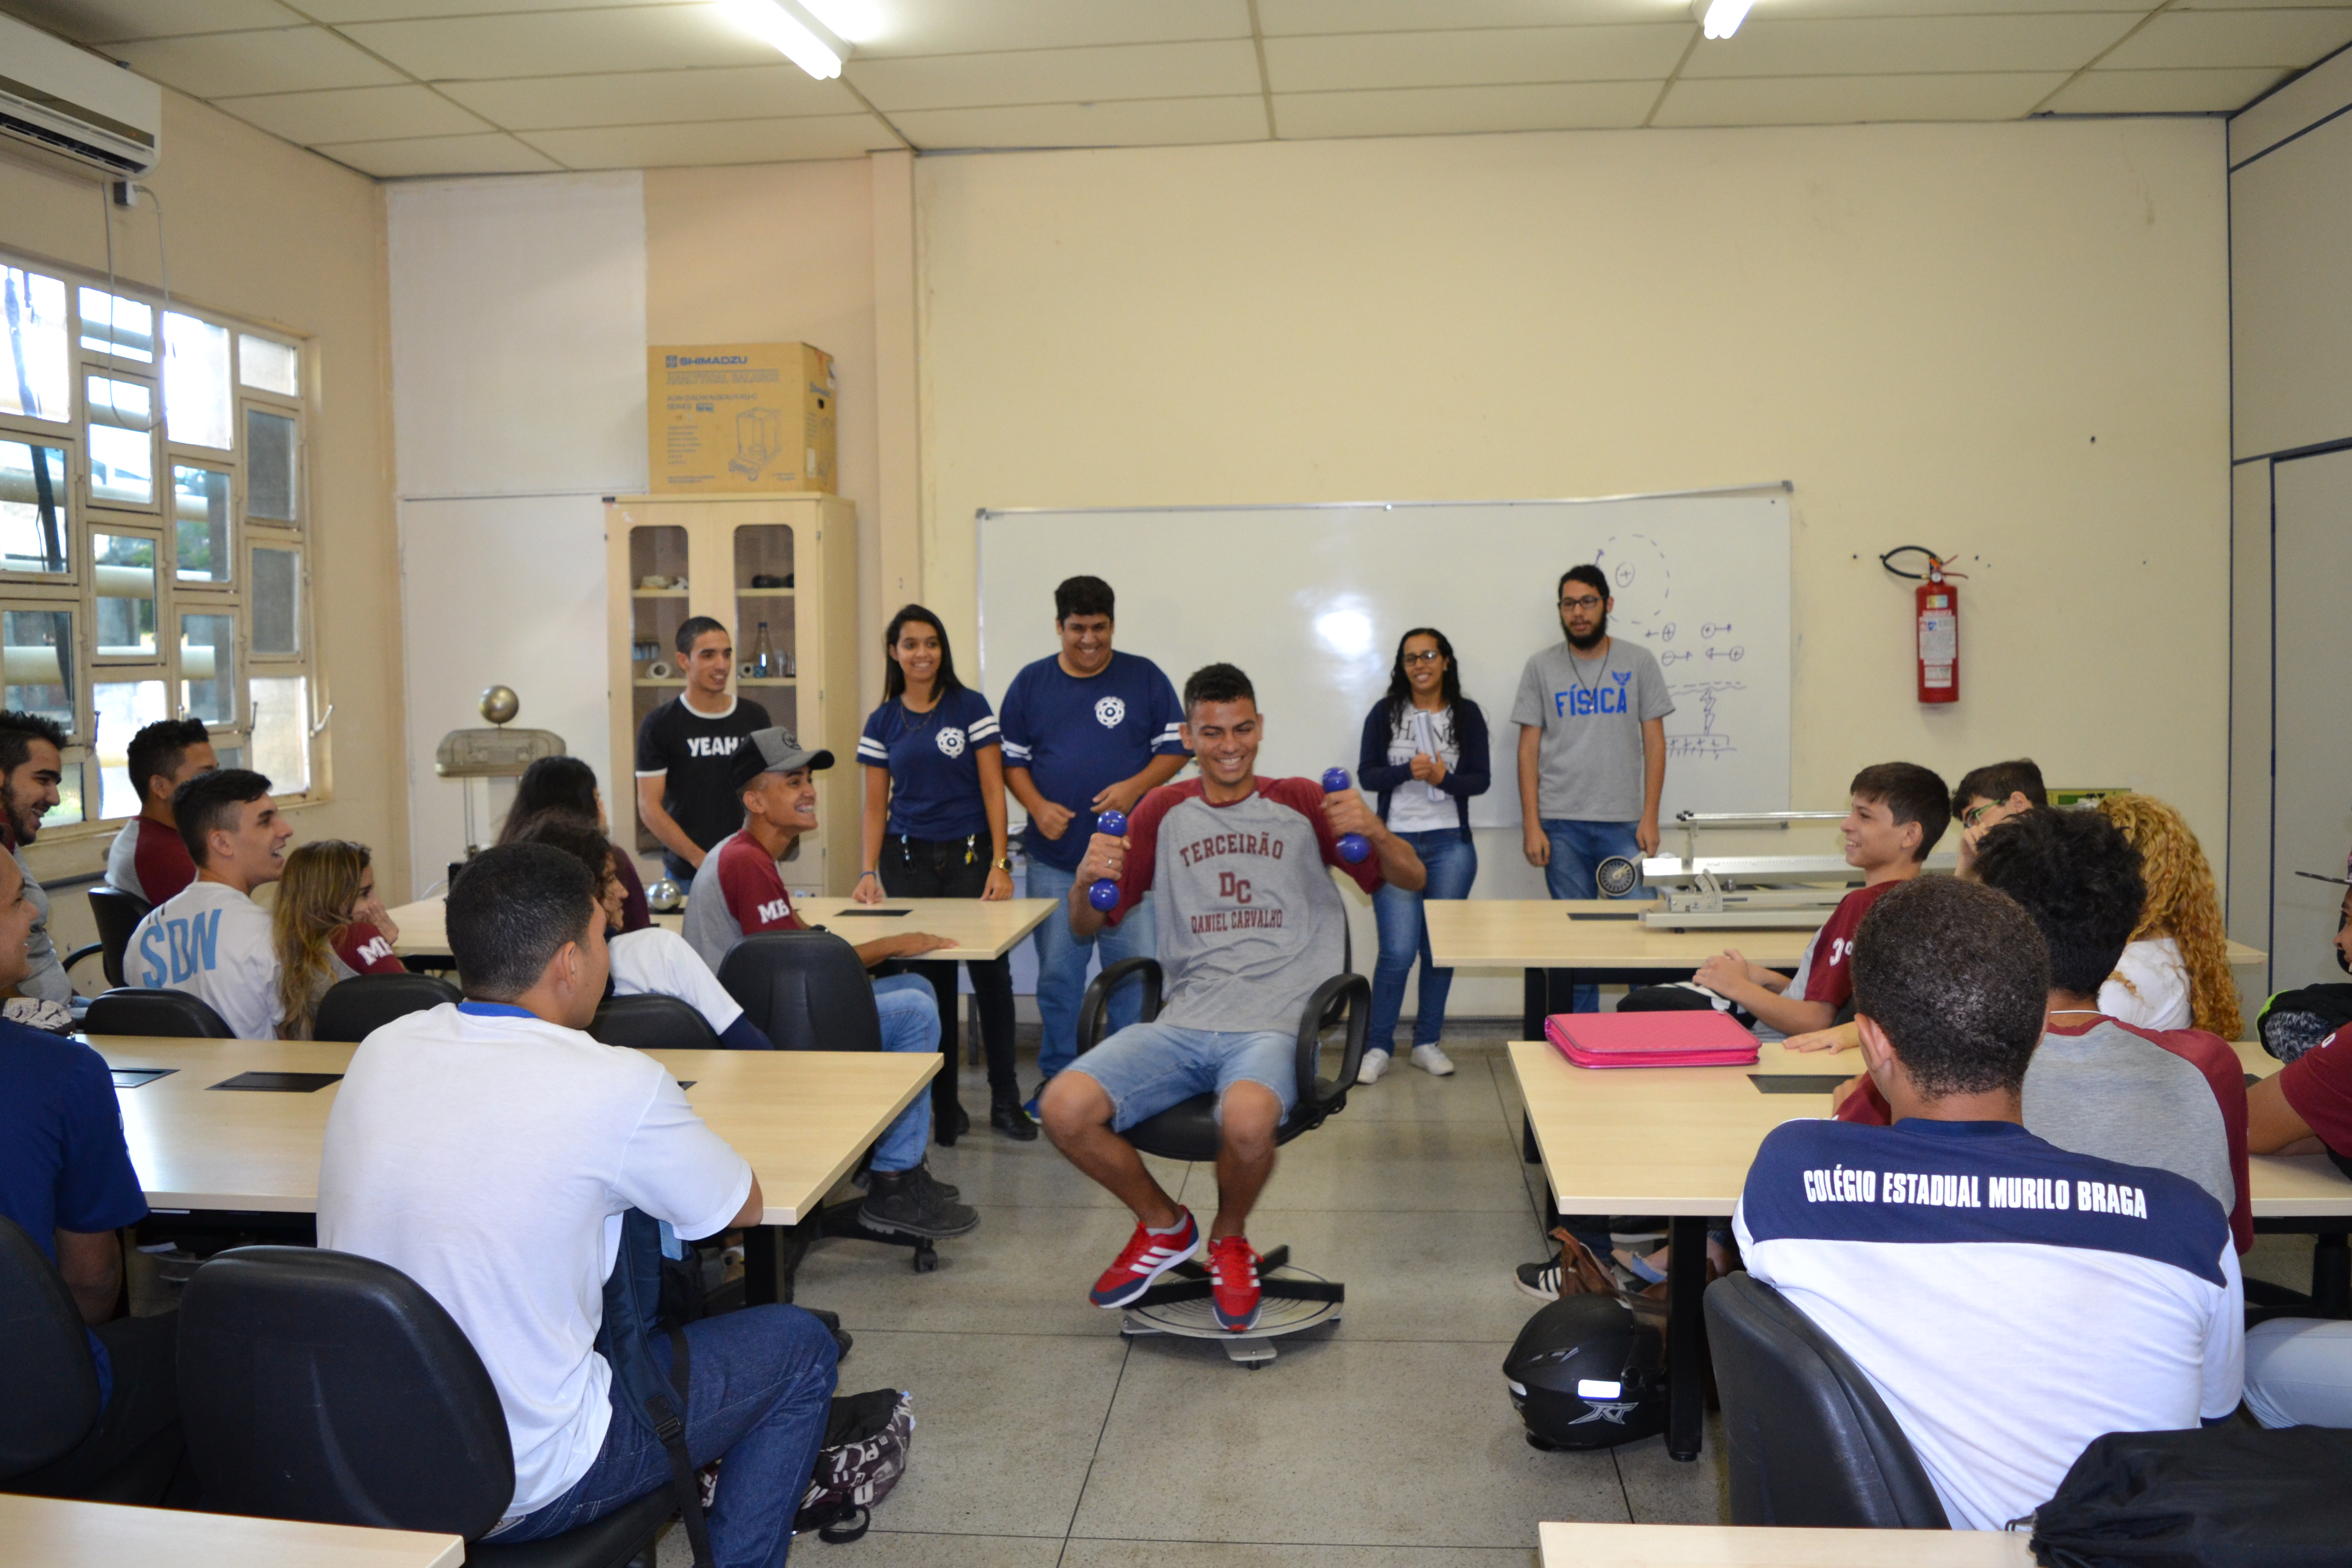 Ao todo, 57 alunos das turmas de 3º ano do Colégio Estadual Murilo Braga participaram de aulas demonstrativas com experiências diversas sobre conteúdo da área de Física.